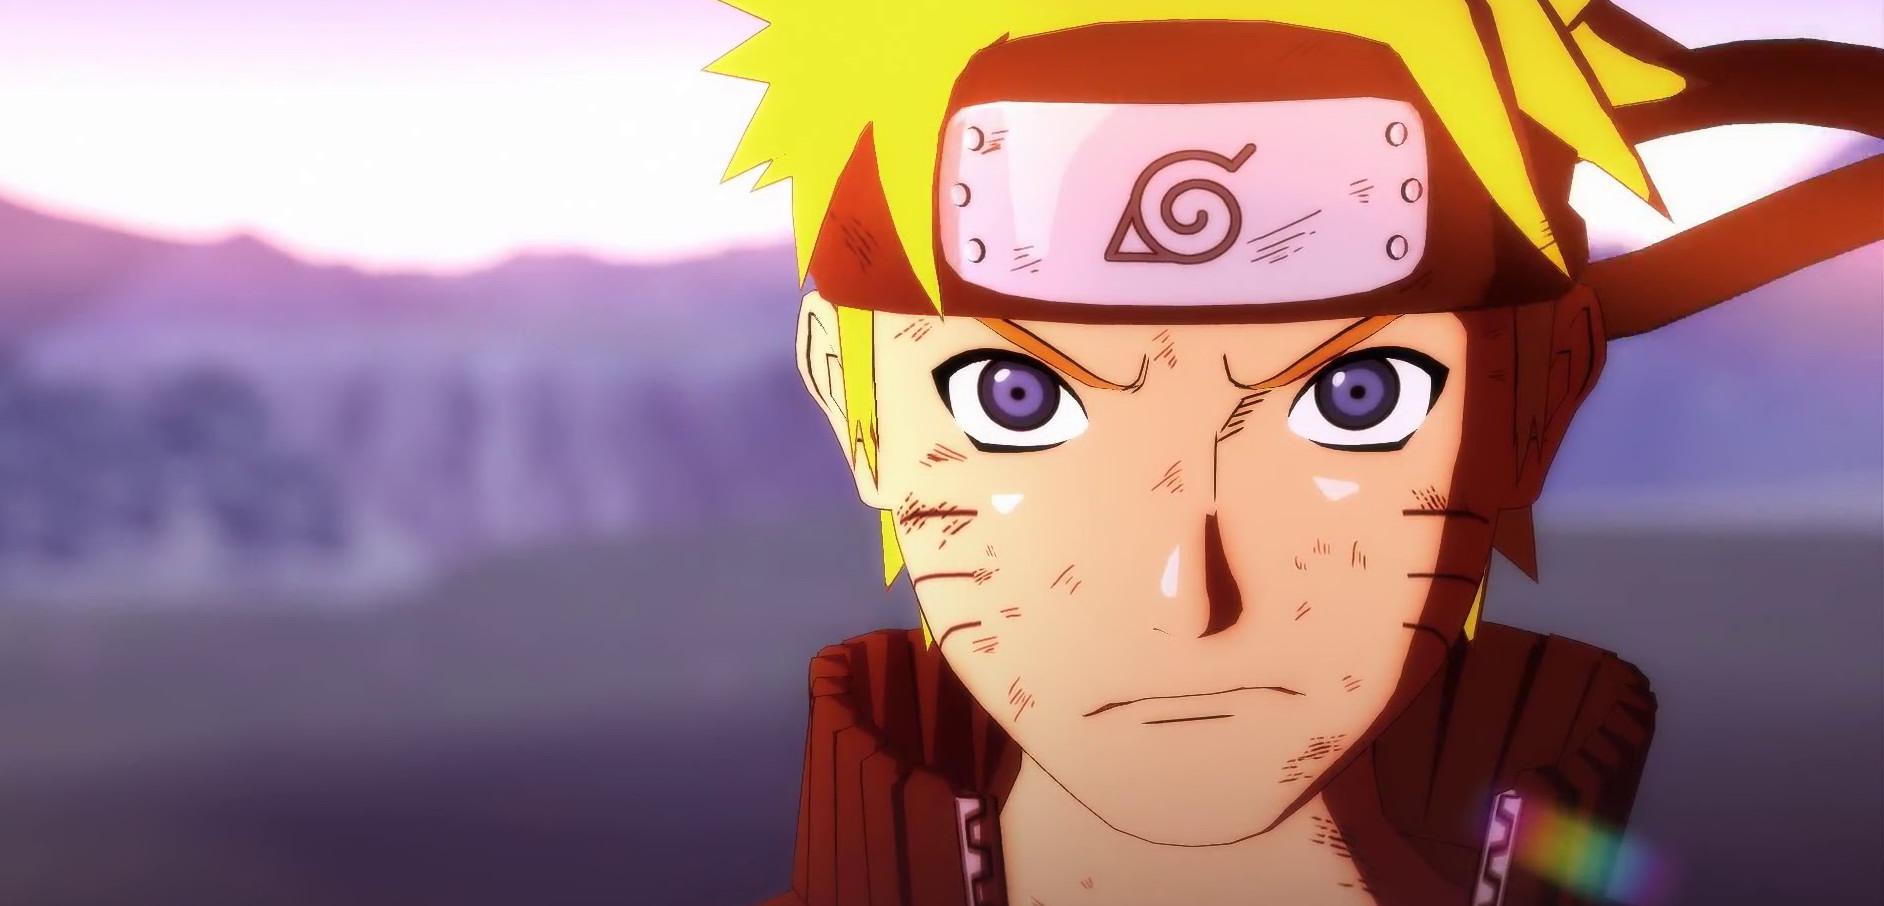 Demo nowego Naruto już dostępne na PS4 i XONE – jak oceniacie tę próbkę gameplayu?